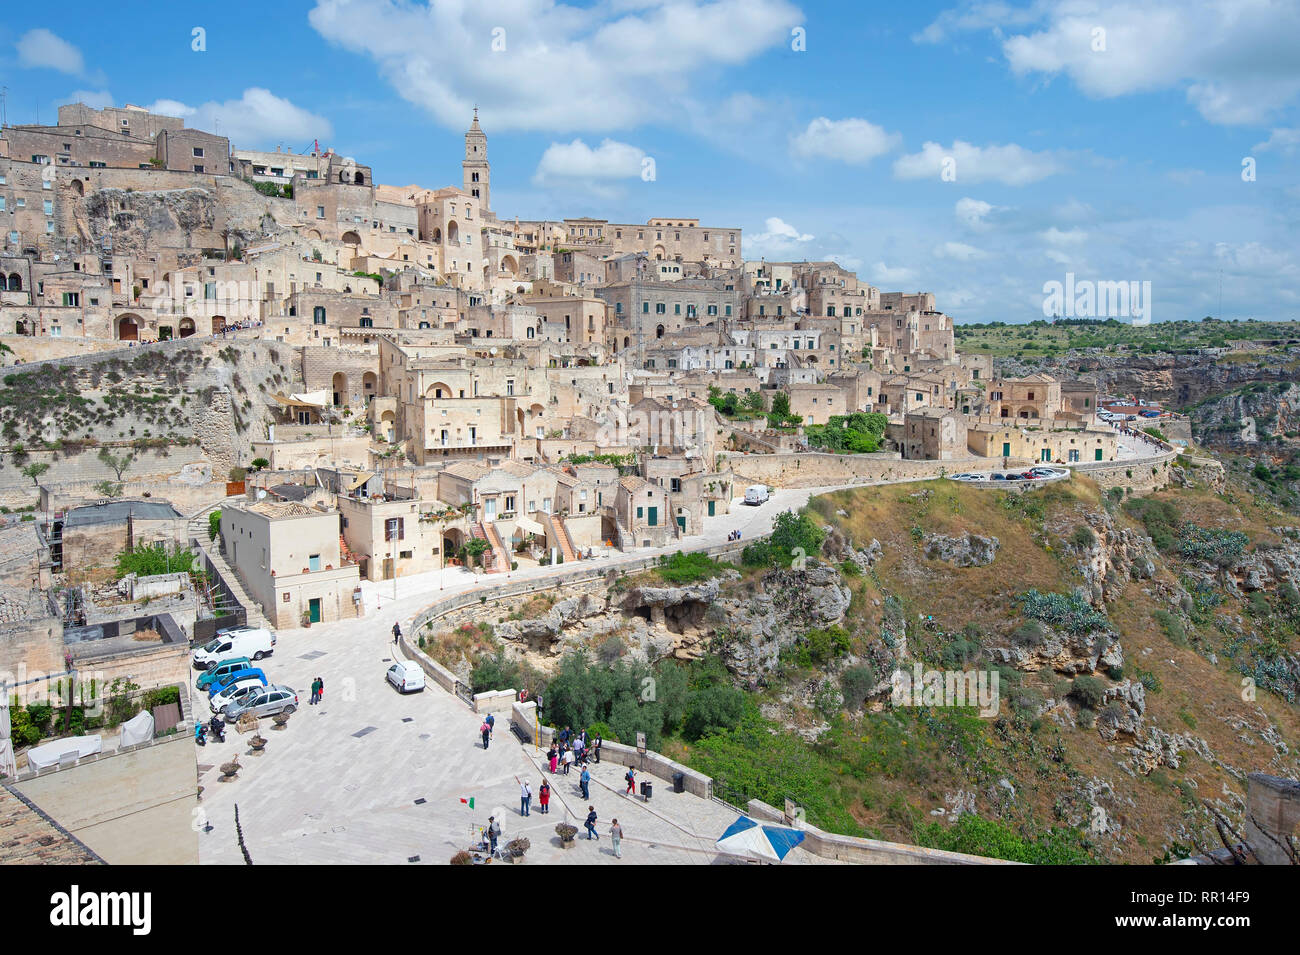 Vista sul Sasso Caveoso, città vecchia medievale, Sassi di Matera, capitali della cultura 2019, Matera, provincia di Basilicata, Italia Foto Stock